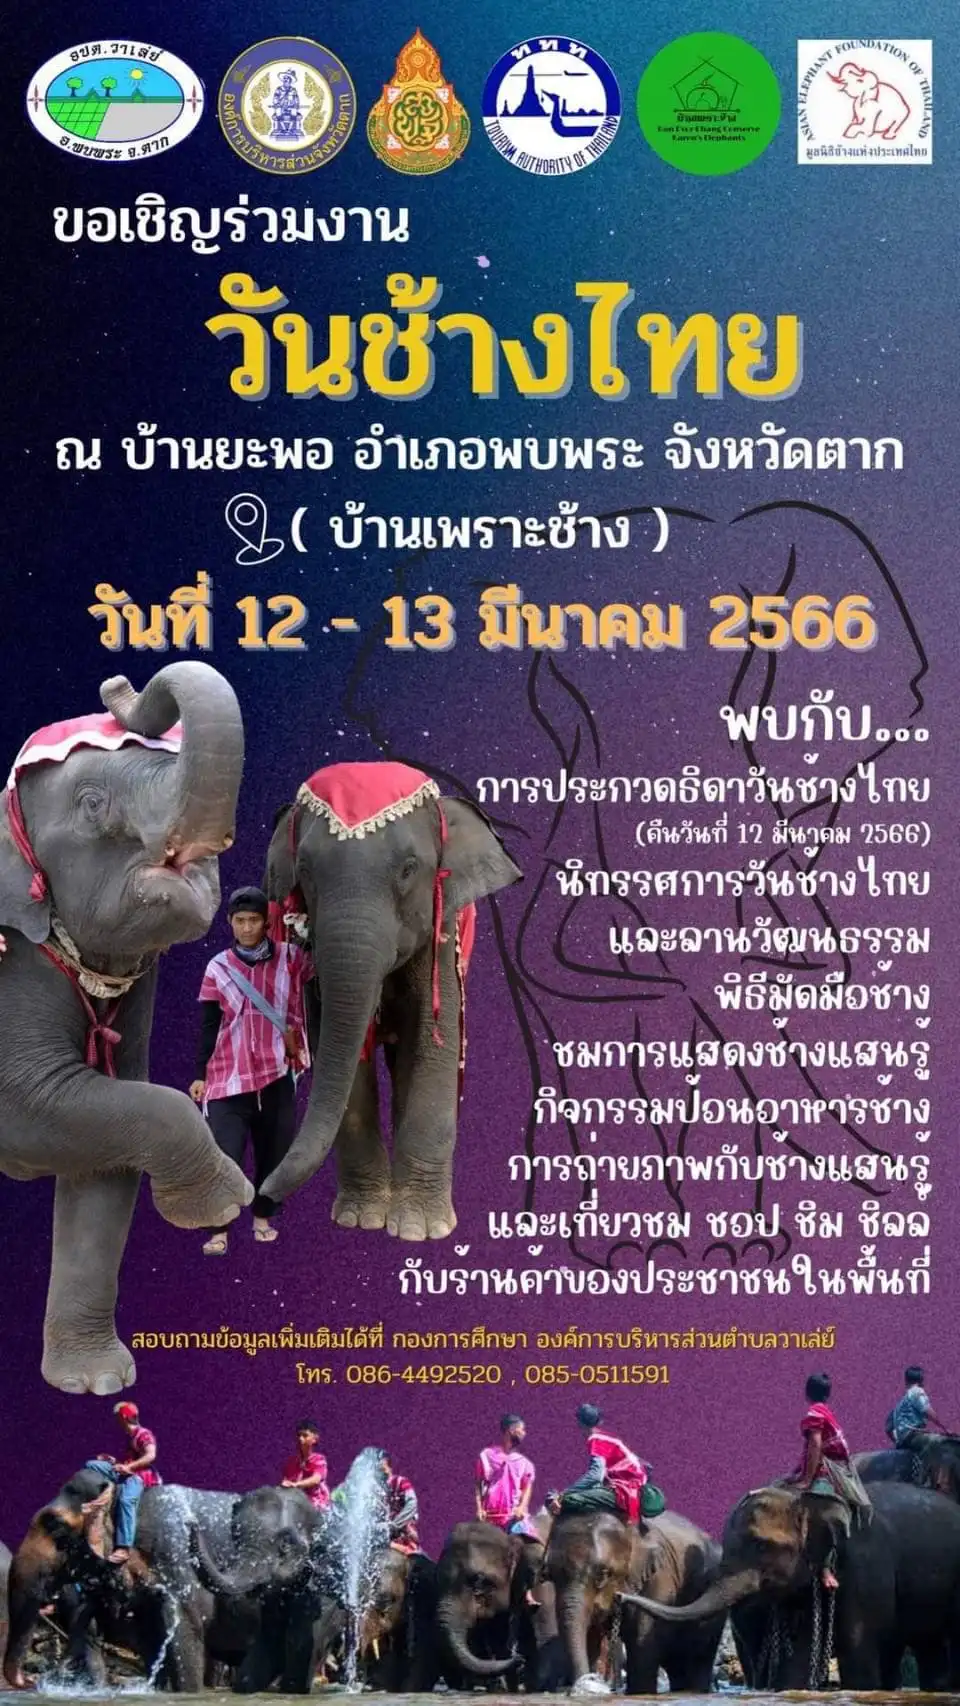 งานวันชางไทย ณ บ้านพะยอ (บ้านเพราะช้าง) อ.พบพระ จ.ตาก 12-13 มีนาคม 66 [Archive] กิจกรรมเทศกาลท่องเที่ยว จ.ตาก ที่ผ่านไปปีที่แล้ว